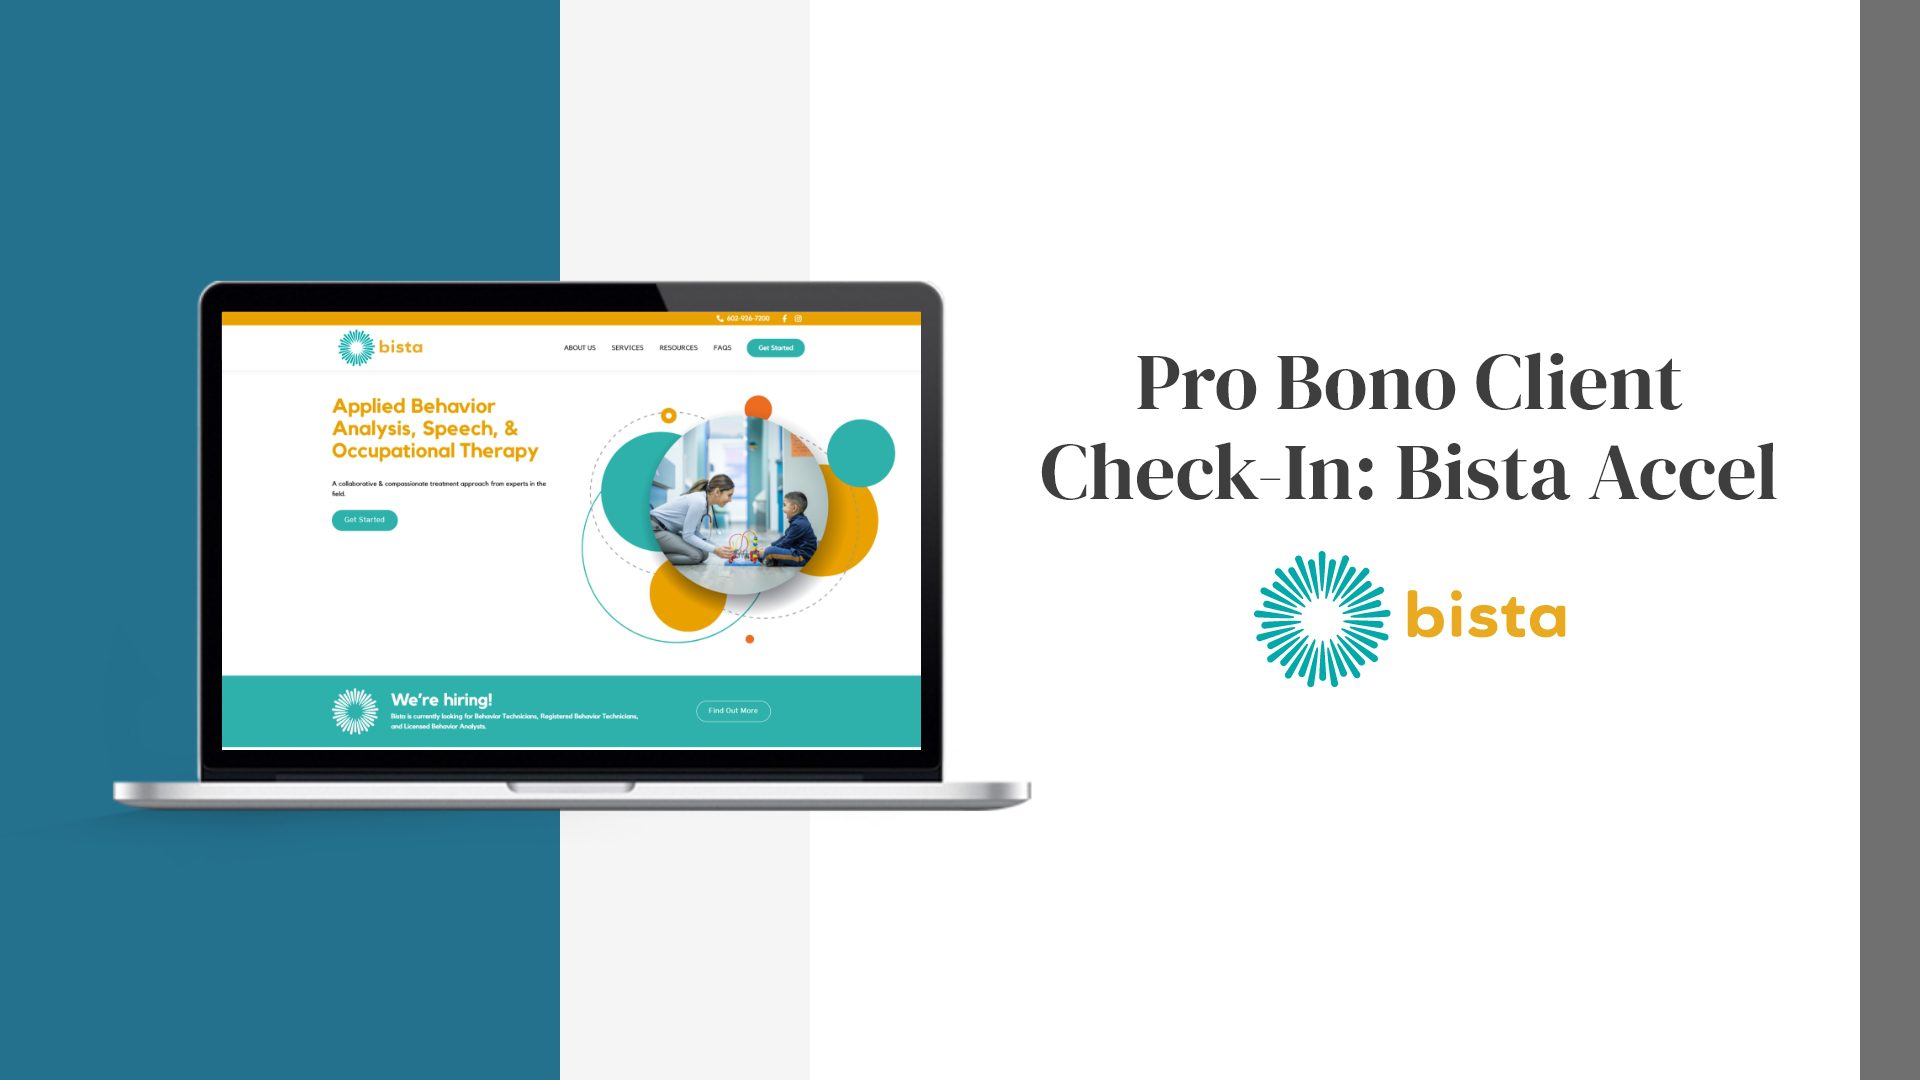 Pro Bono Client Check-In: Bista Accel